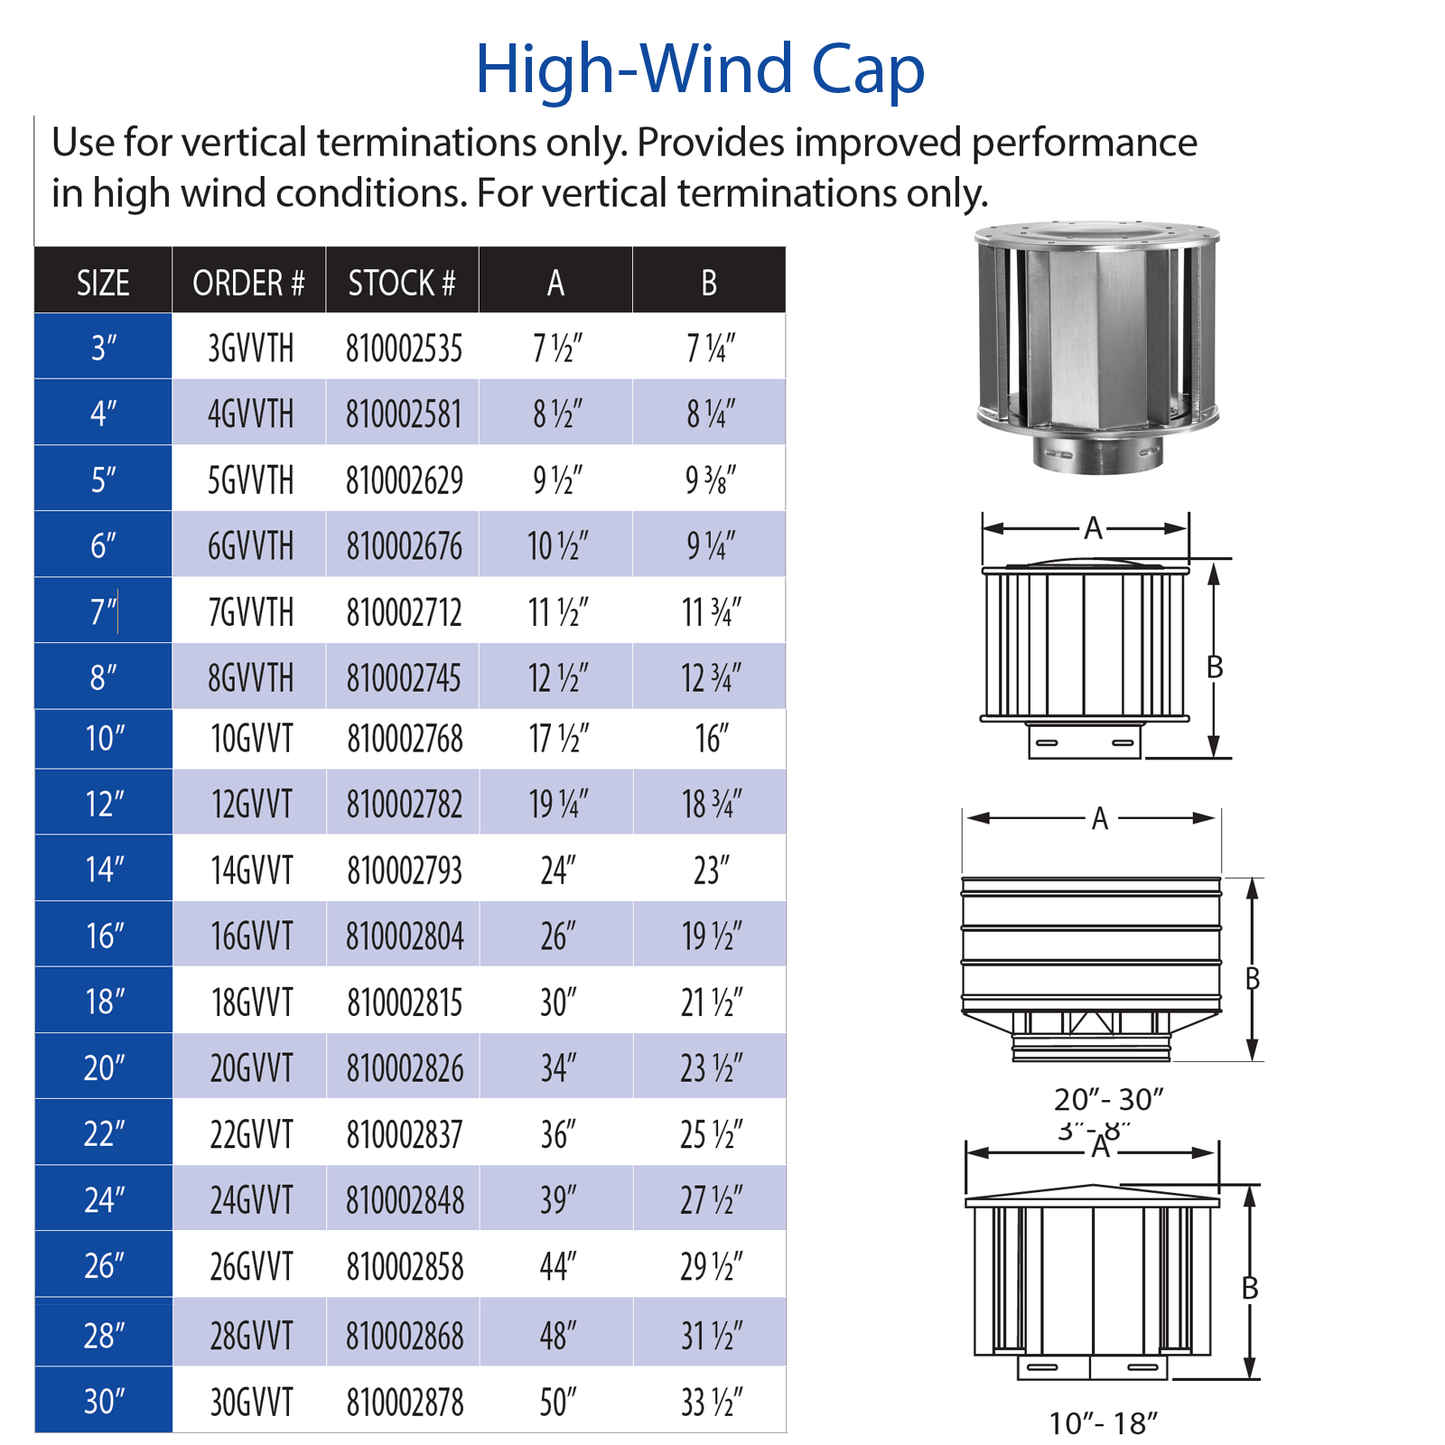 DuraVent Type B High-Wind Cap | 4GVVTH